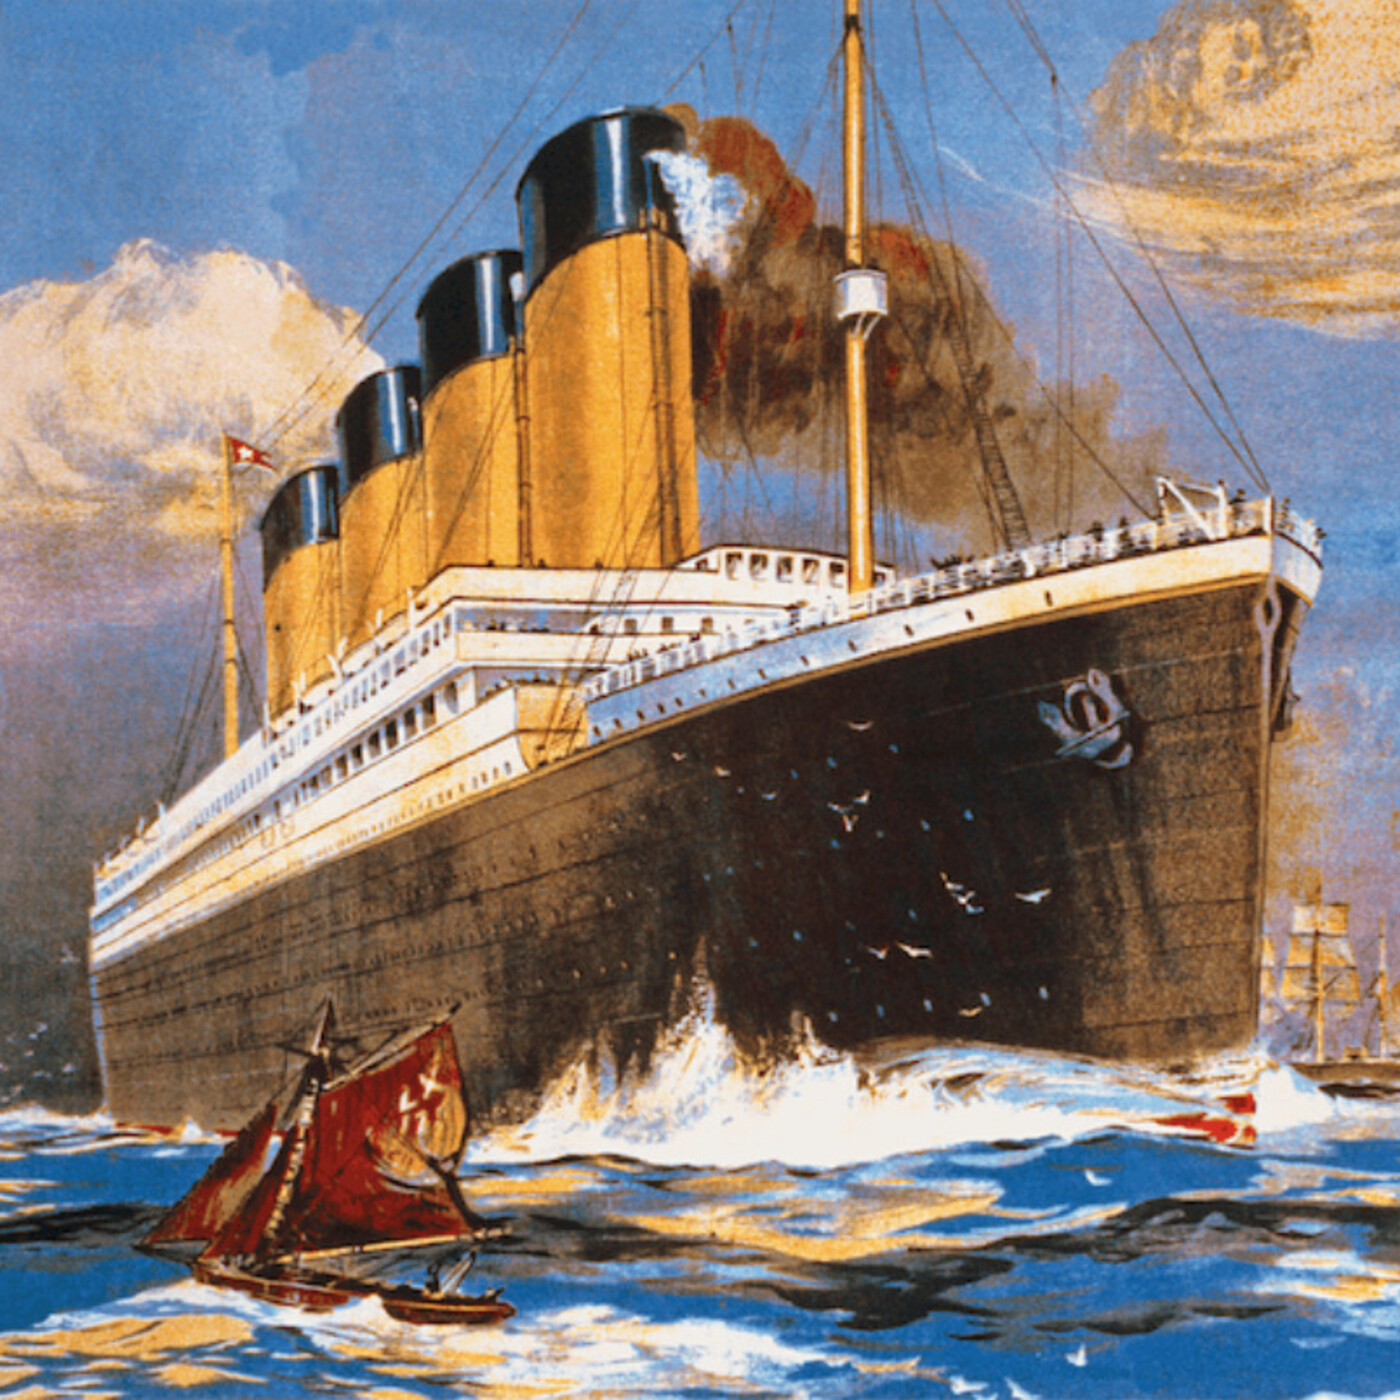 El Titanic, la tragedia del barco insumergible